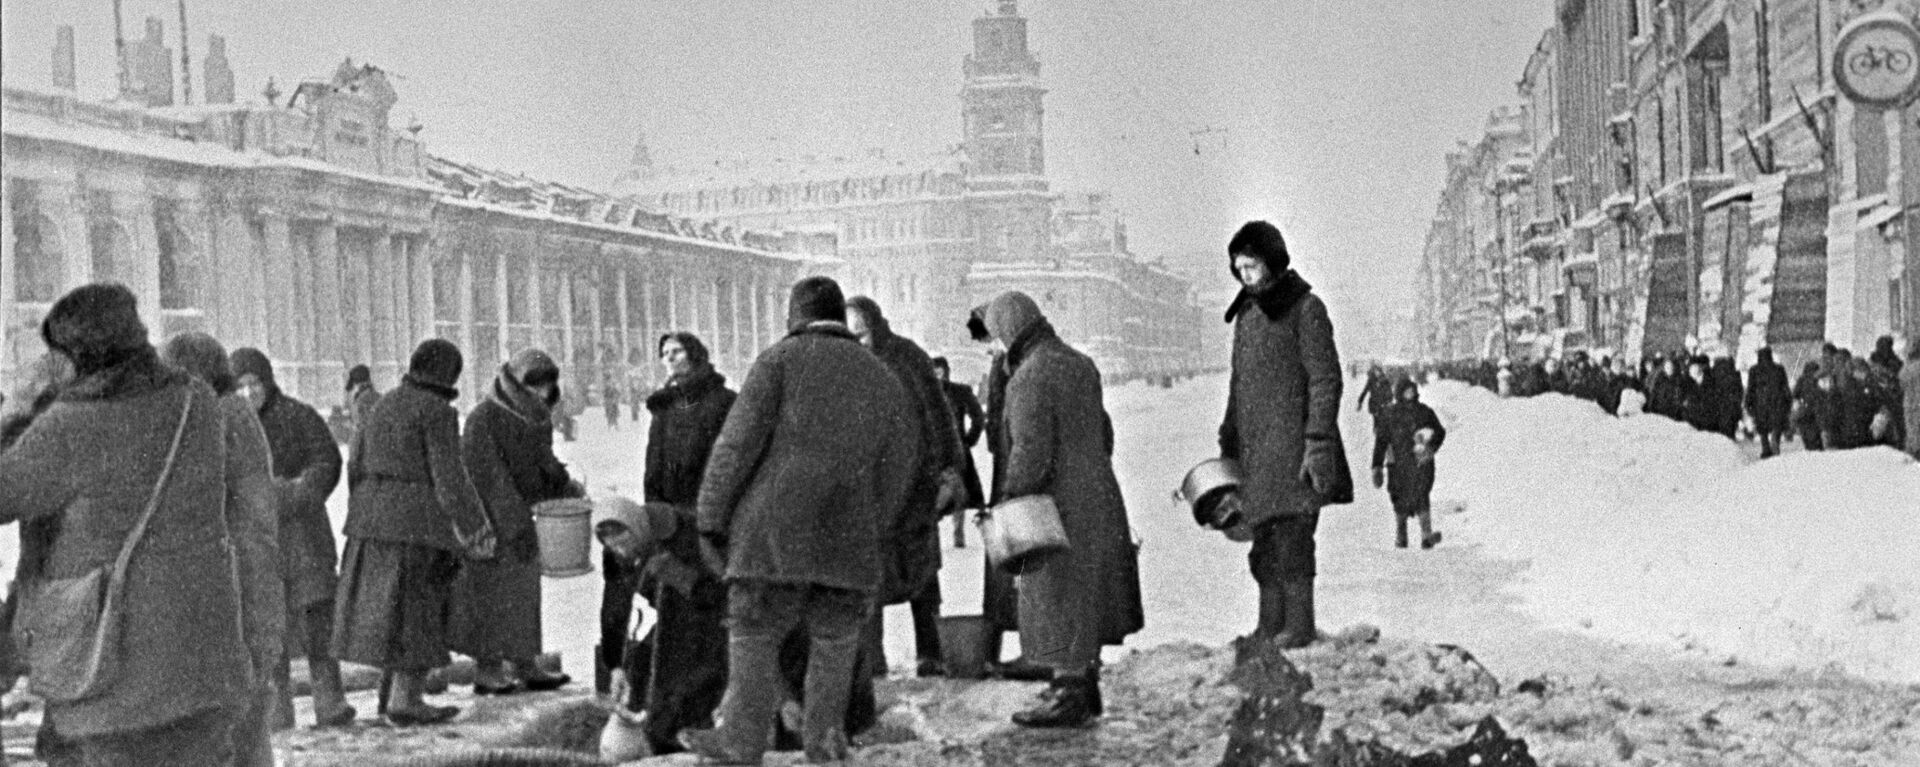 Los habitantes de la asediada Leningrado están recogiendo agua de los agujeros en el asfalto. - Sputnik Mundo, 1920, 27.01.2020